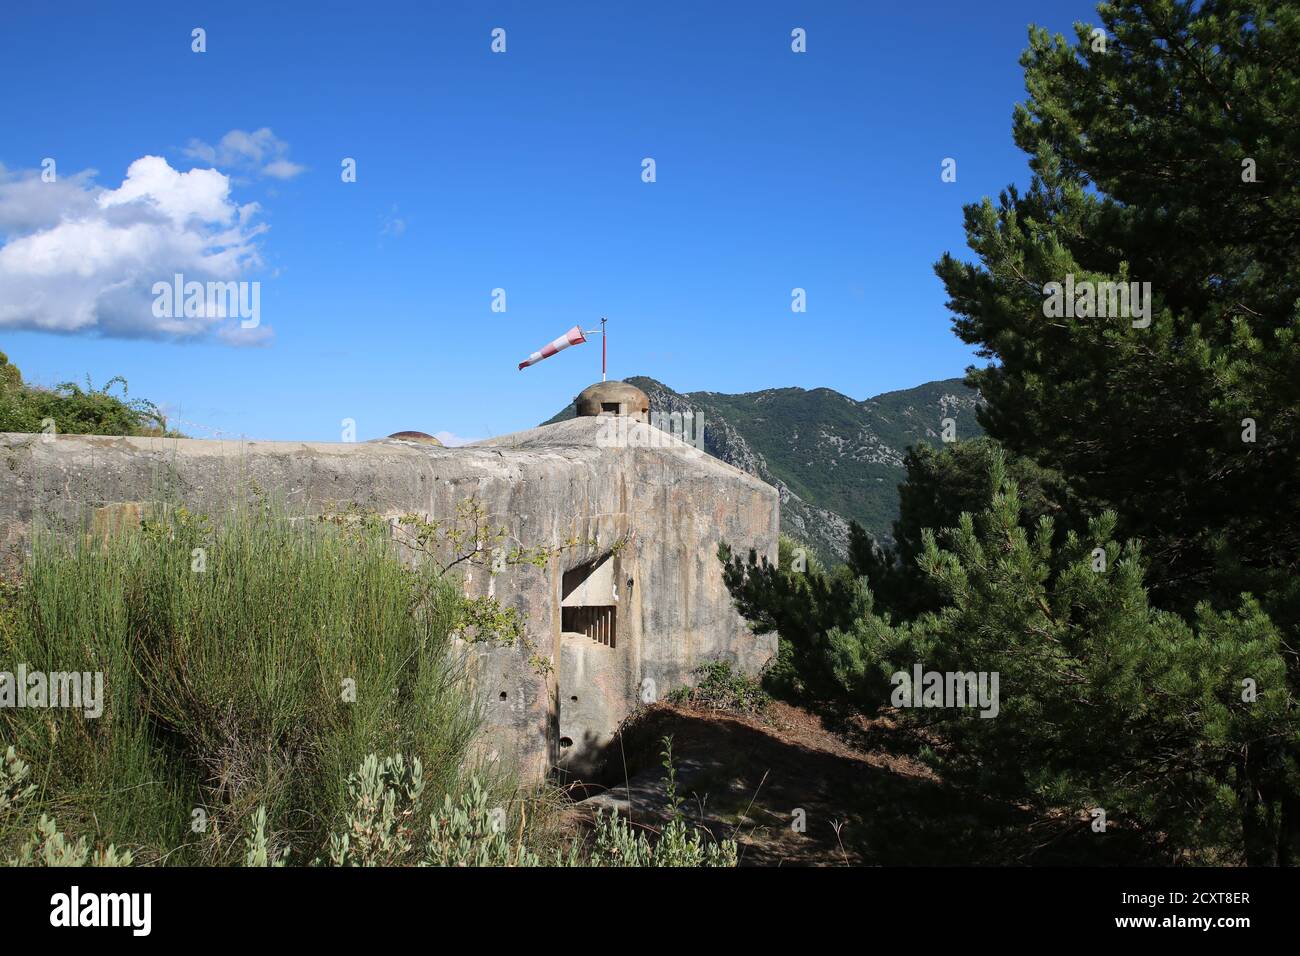 Ouvrage de l'Agaisen de la ligne Maginot dans les Alpes à Sospel / ouvrage l'Agaisen a Sospel nelle Alpi Foto Stock